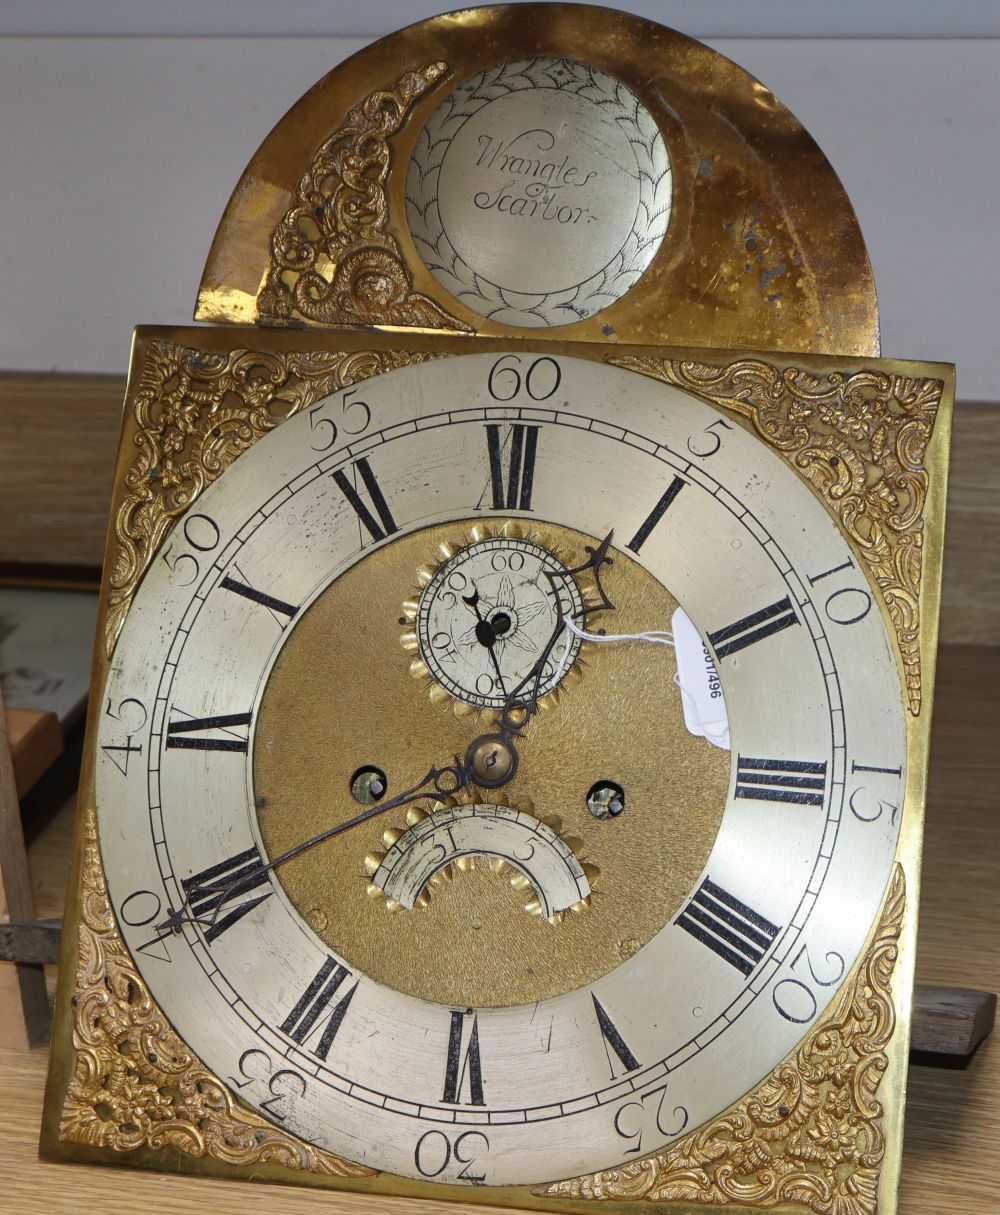 Wrangles of Scarborough. A longcase clock movement